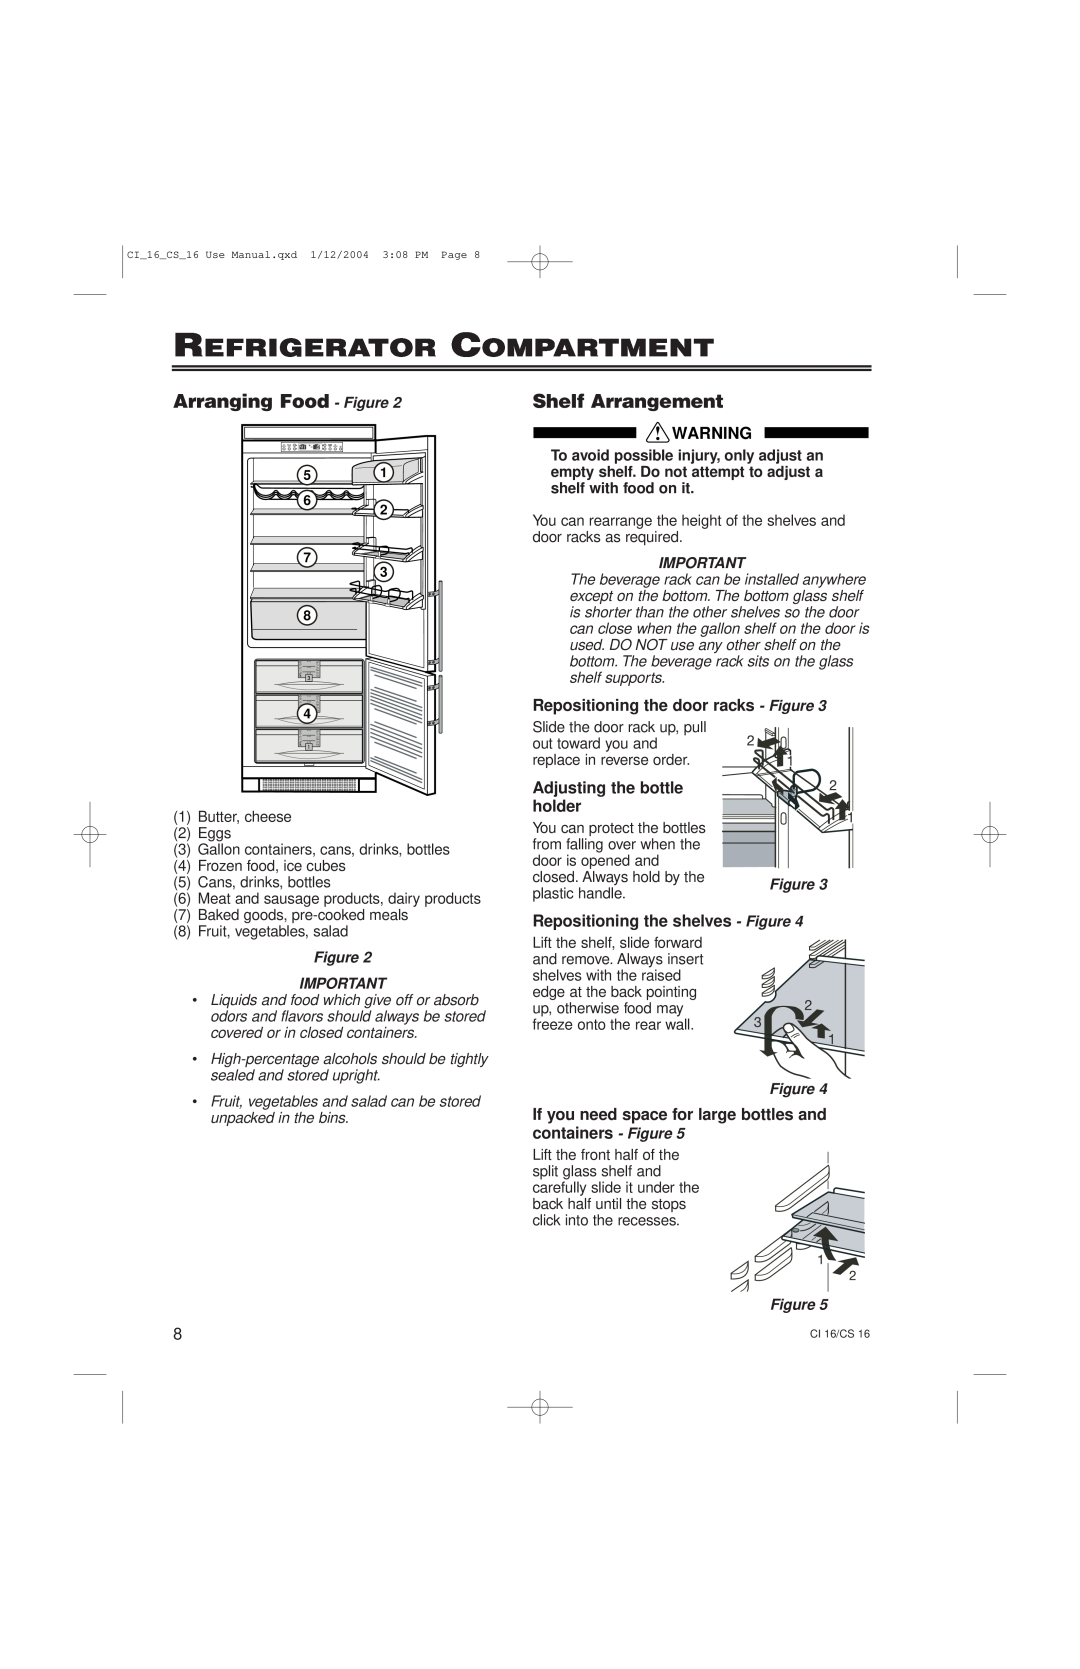 Liebherr CS16 Refrigerator Compartment, Arranging Food - Figure, Shelf Arrangement, Repositioning the door racks - Figure 